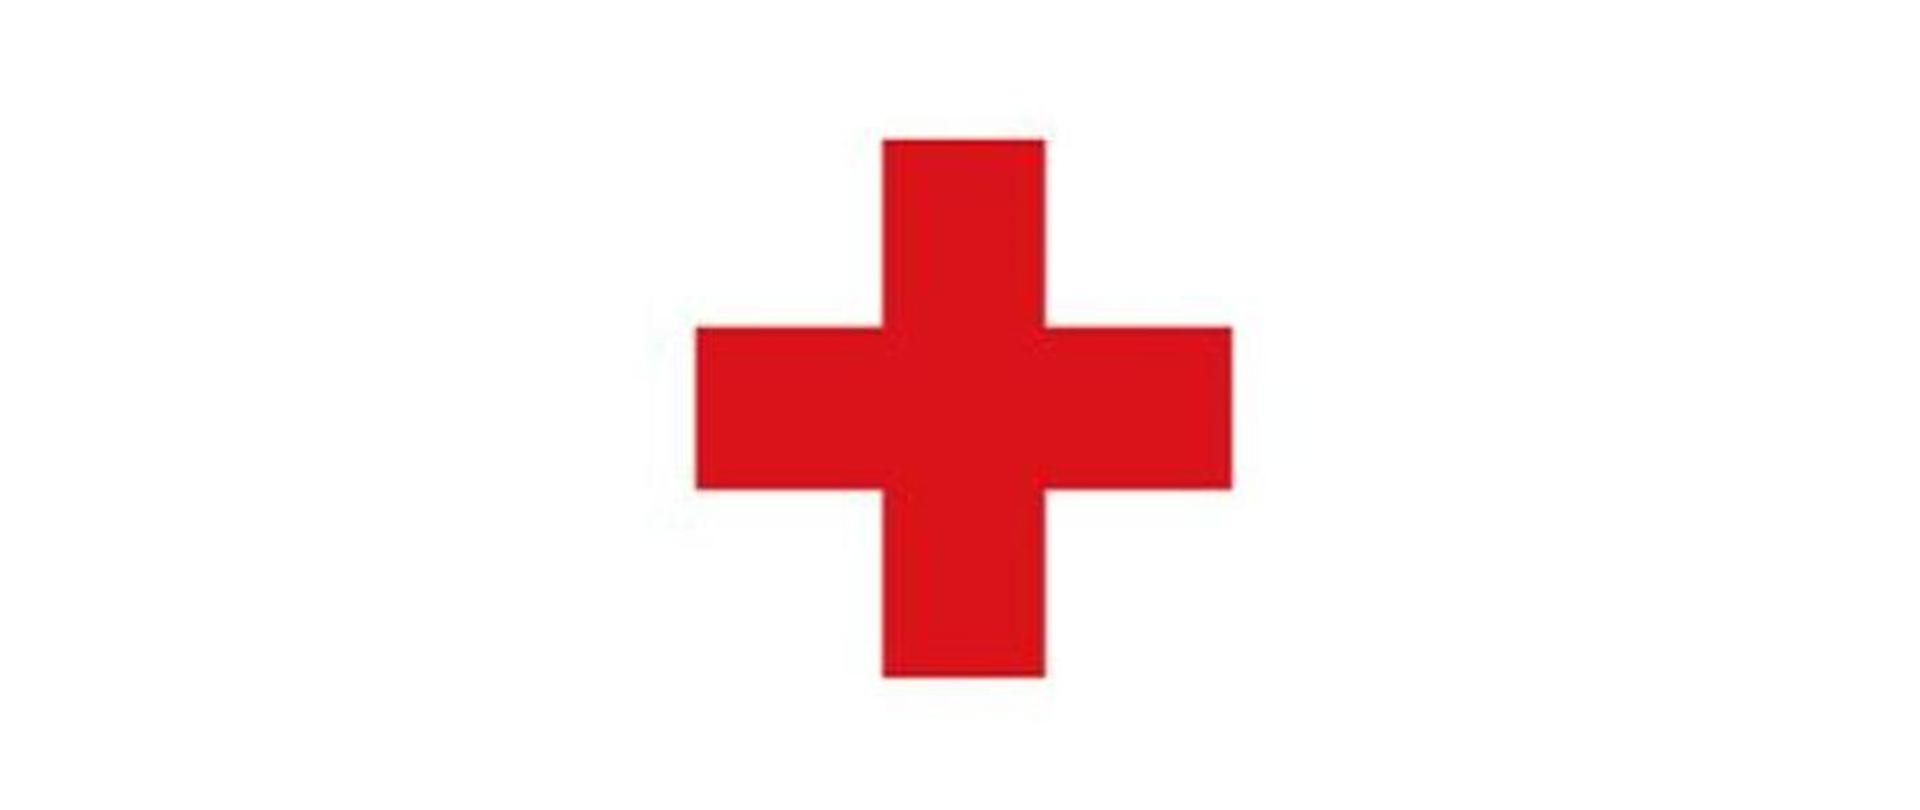 Ilustracja przedstawia na białym tle czerwony krzyż